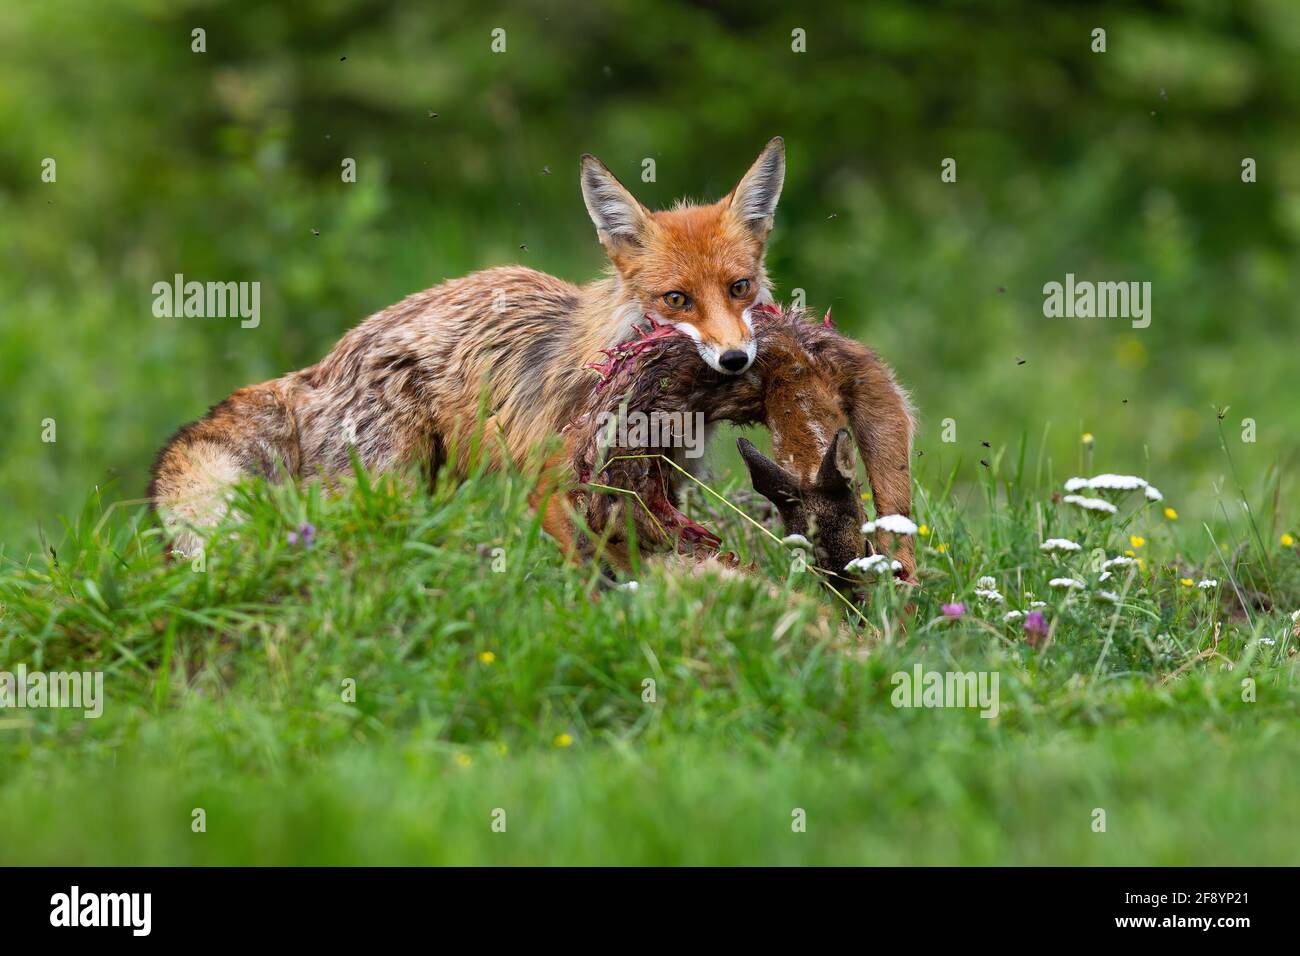 Caza del zorro en media veda: consejos y trucos para cazarlos en verano